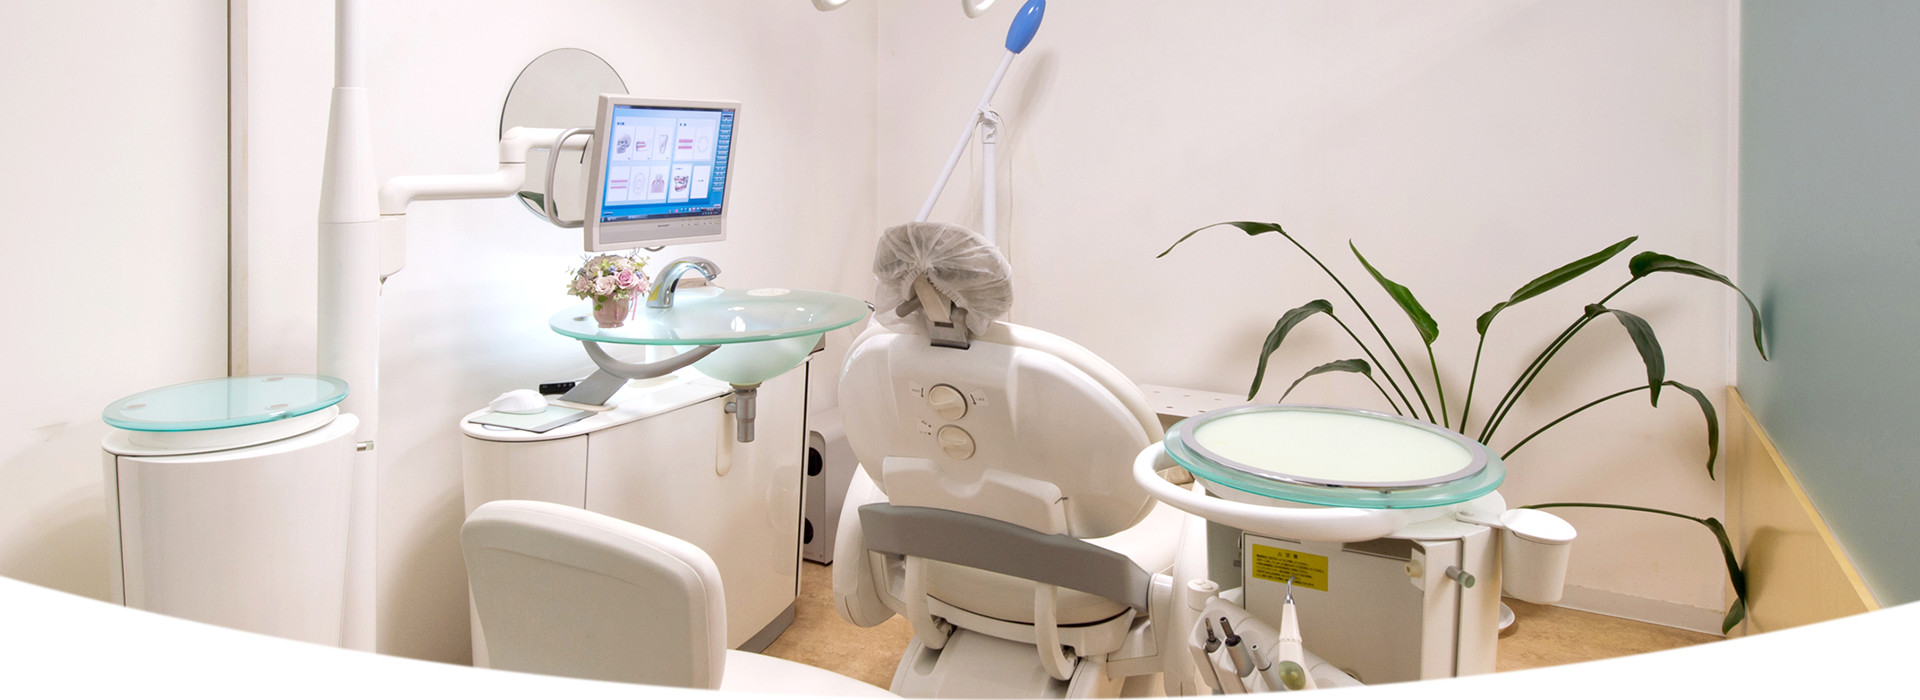 福岡市中央区の「ひろ歯科クリニック」では、審美歯科・ホワイトニング、インプラントなどの自費診療や、一般的な歯科治療を行う歯医者です。